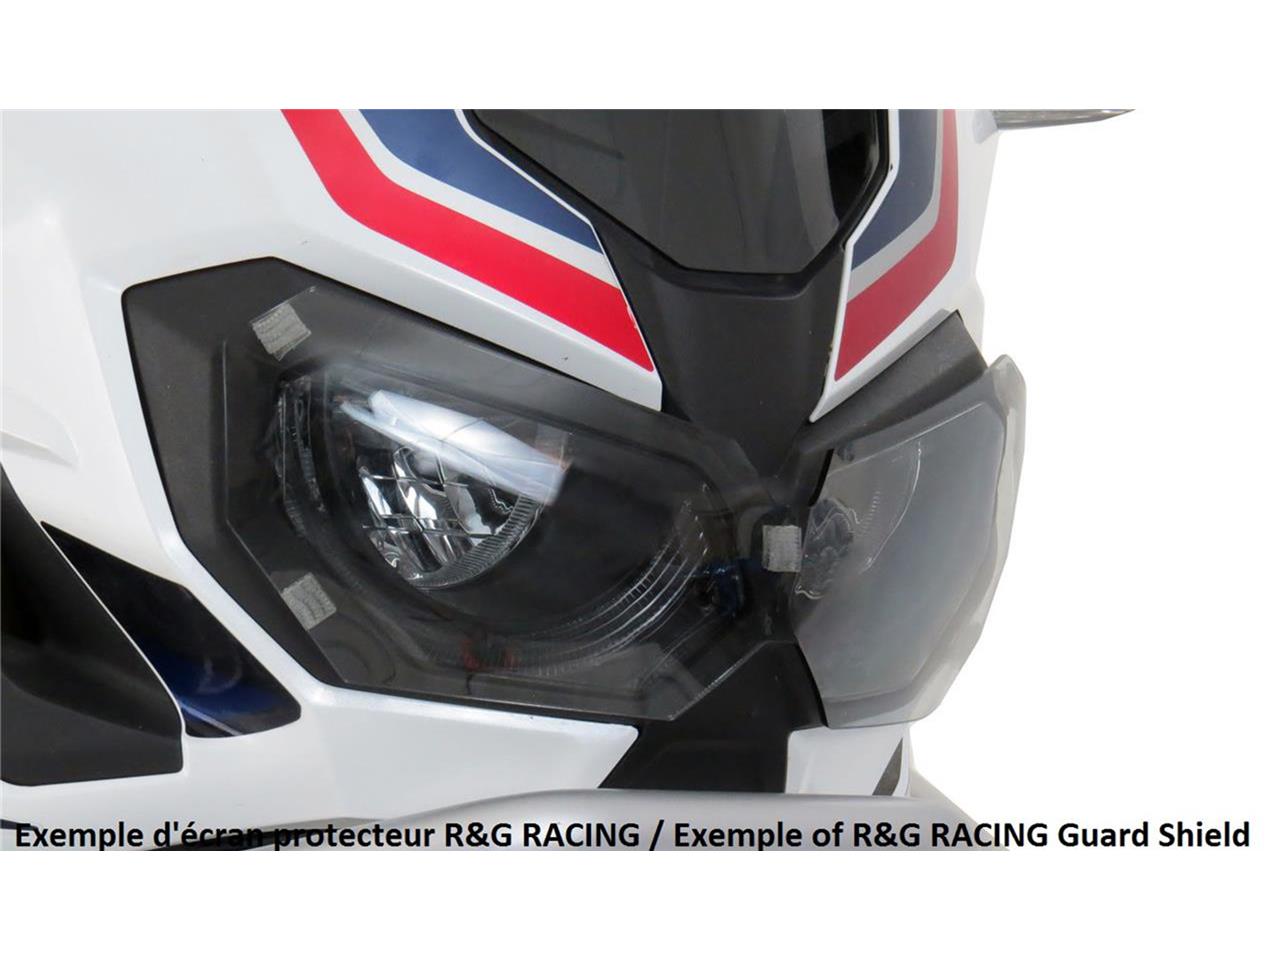 Ecran de protection feu avant marque R&G RACING translucide